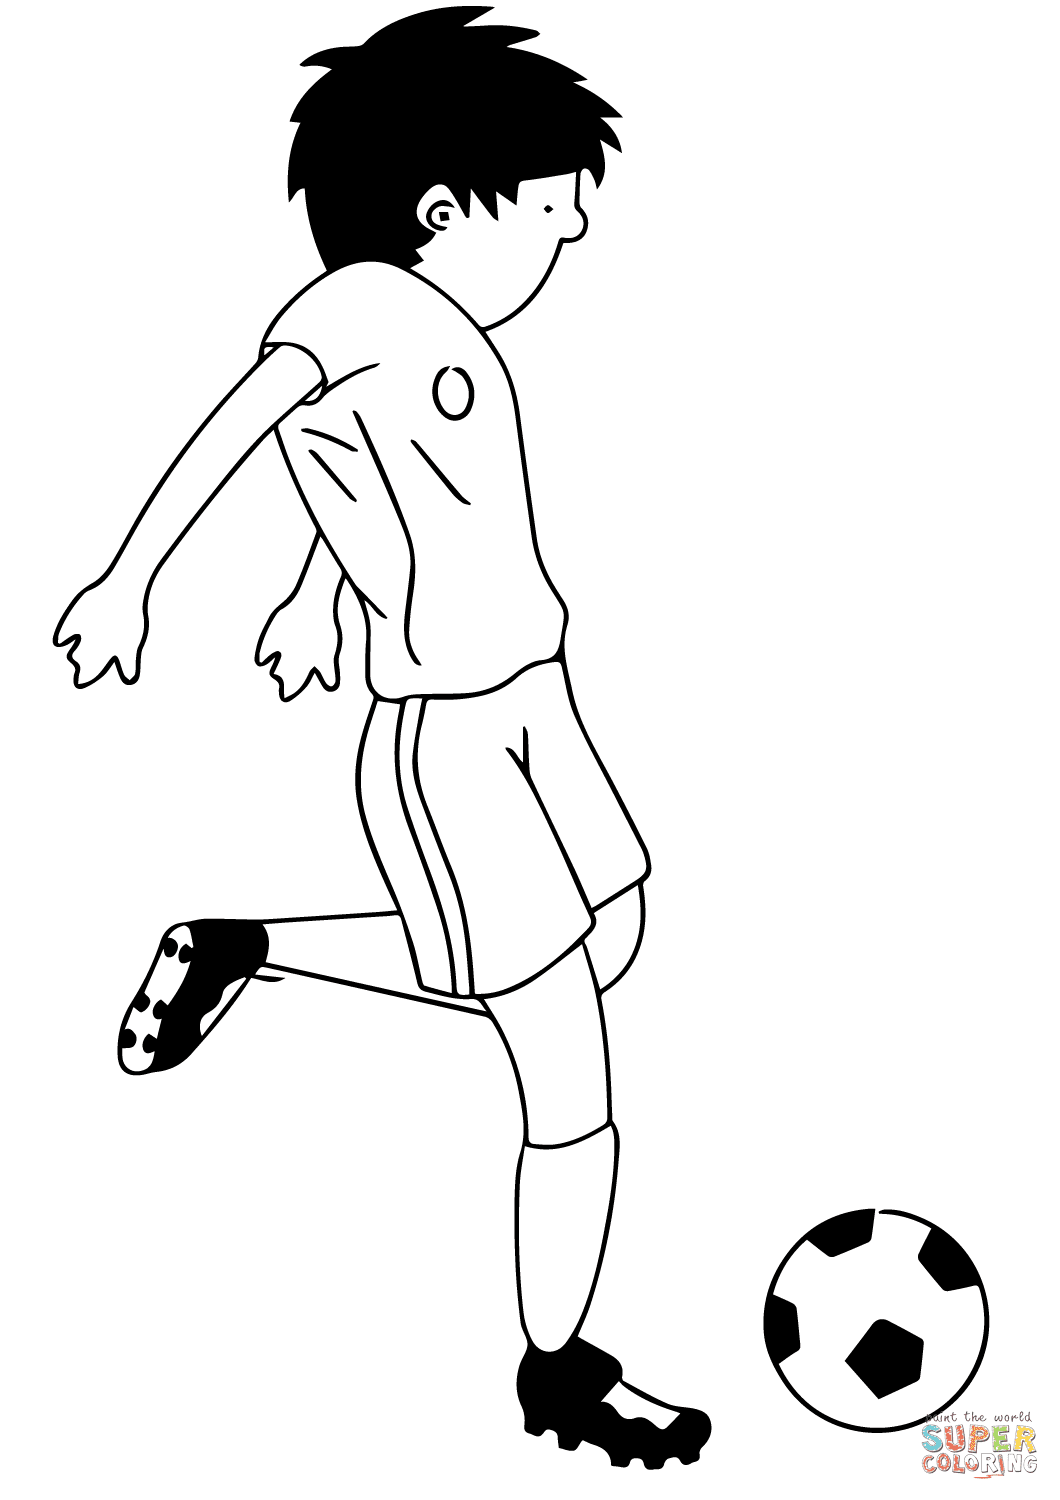 Dibujo De Dibujo De Nino Jugando Al Futbol Para Colorear Dibujos Para Colorear Imprimir Gratis